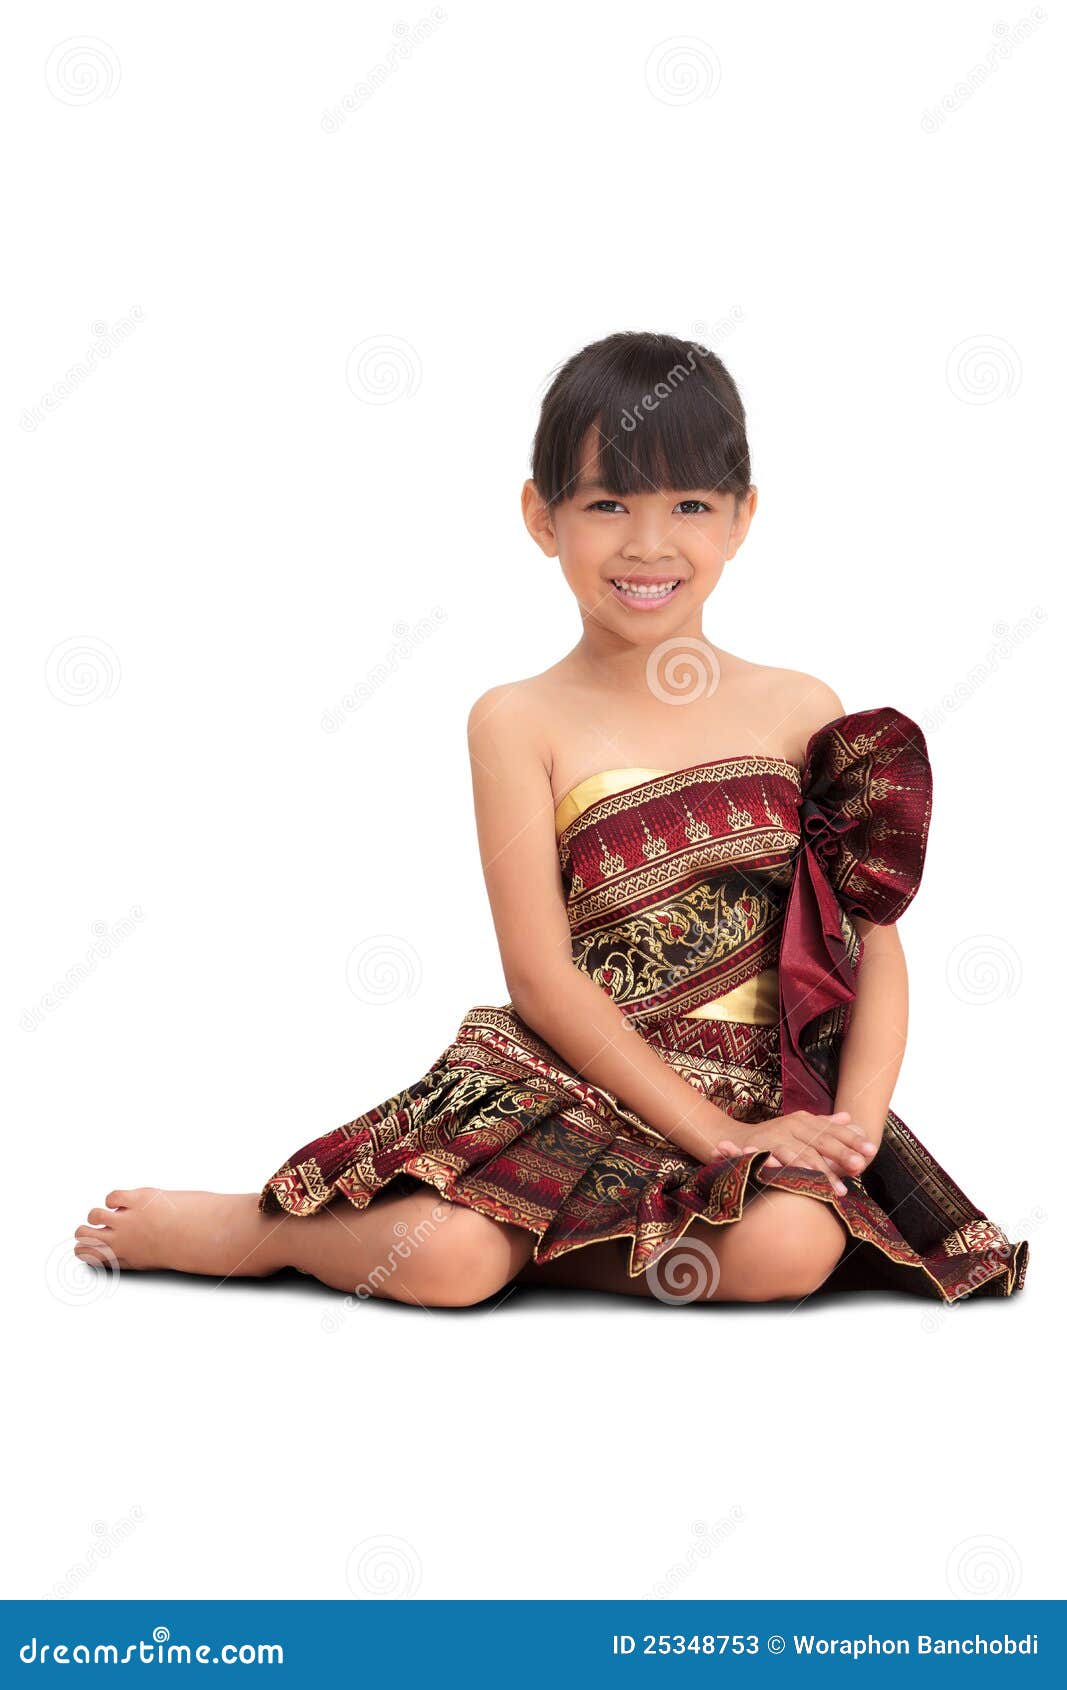 Юные тайцы. Маленькая тайская девочка. Тайская девочка дети. Тайцы девочки маленькие. Девочки тайки маленькие улыбаются в национальном костюме.